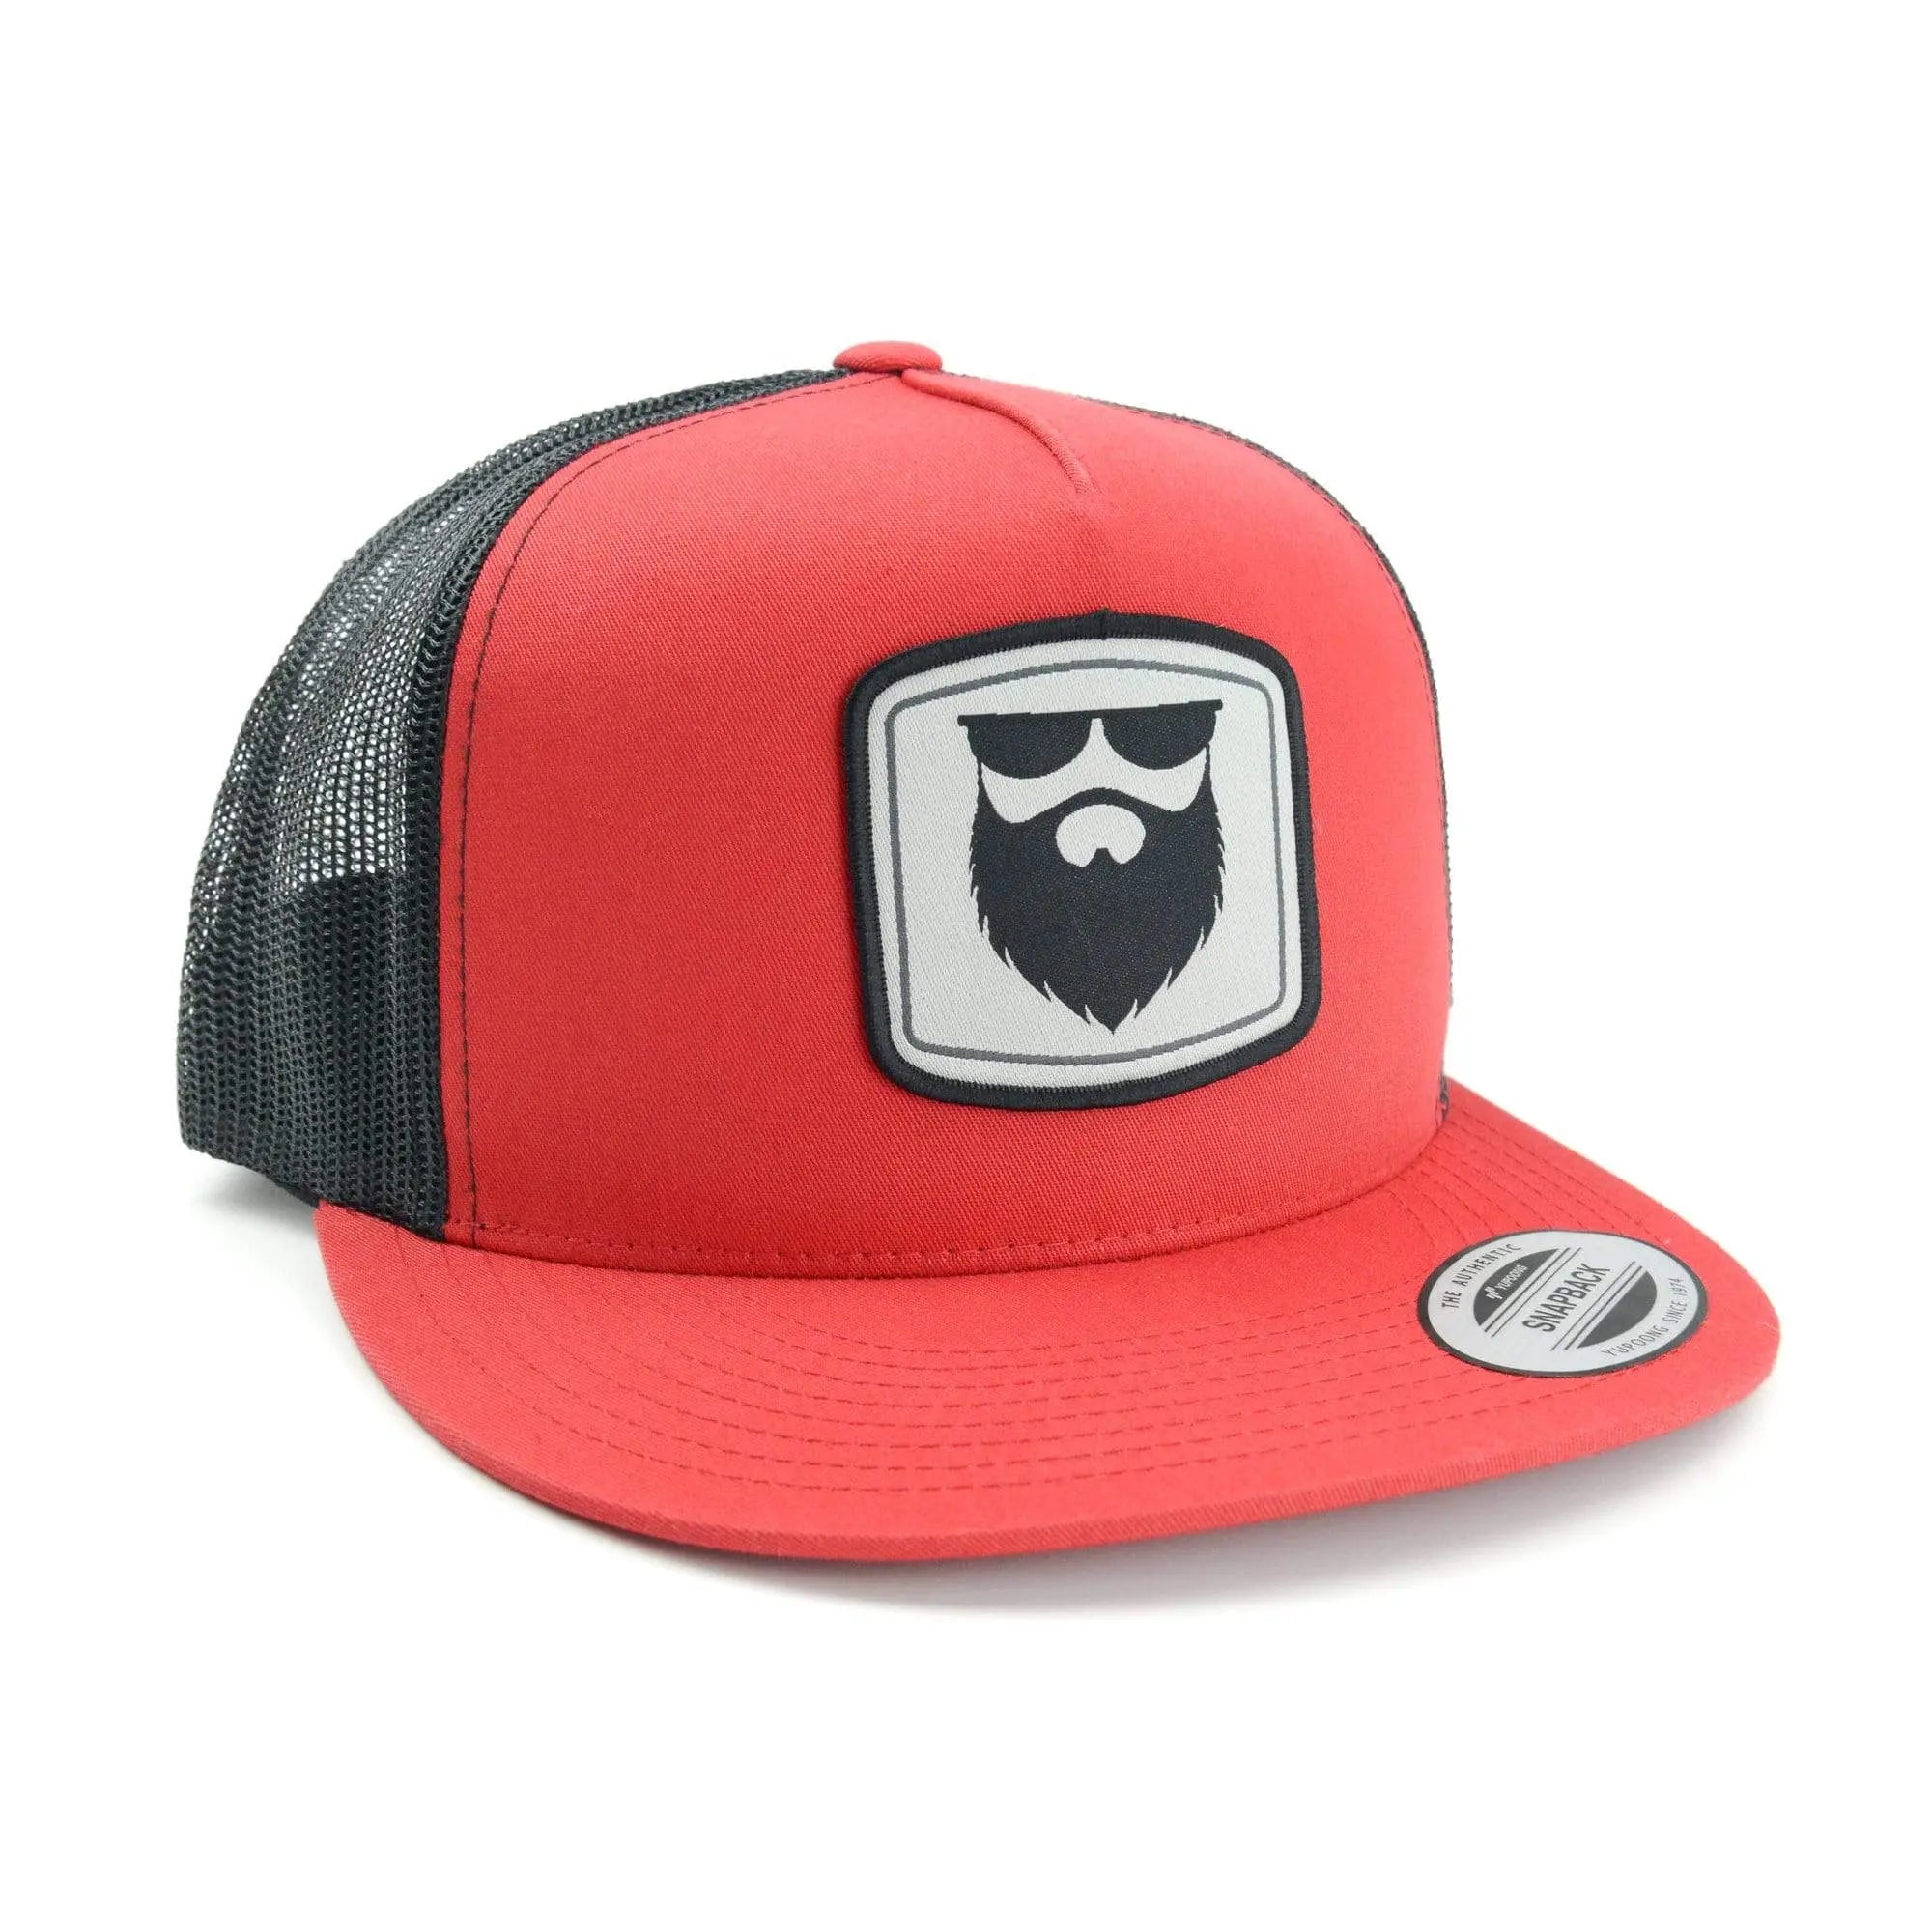 Beard Gear Mesh Trucker Snapback - Red/Black|Hat